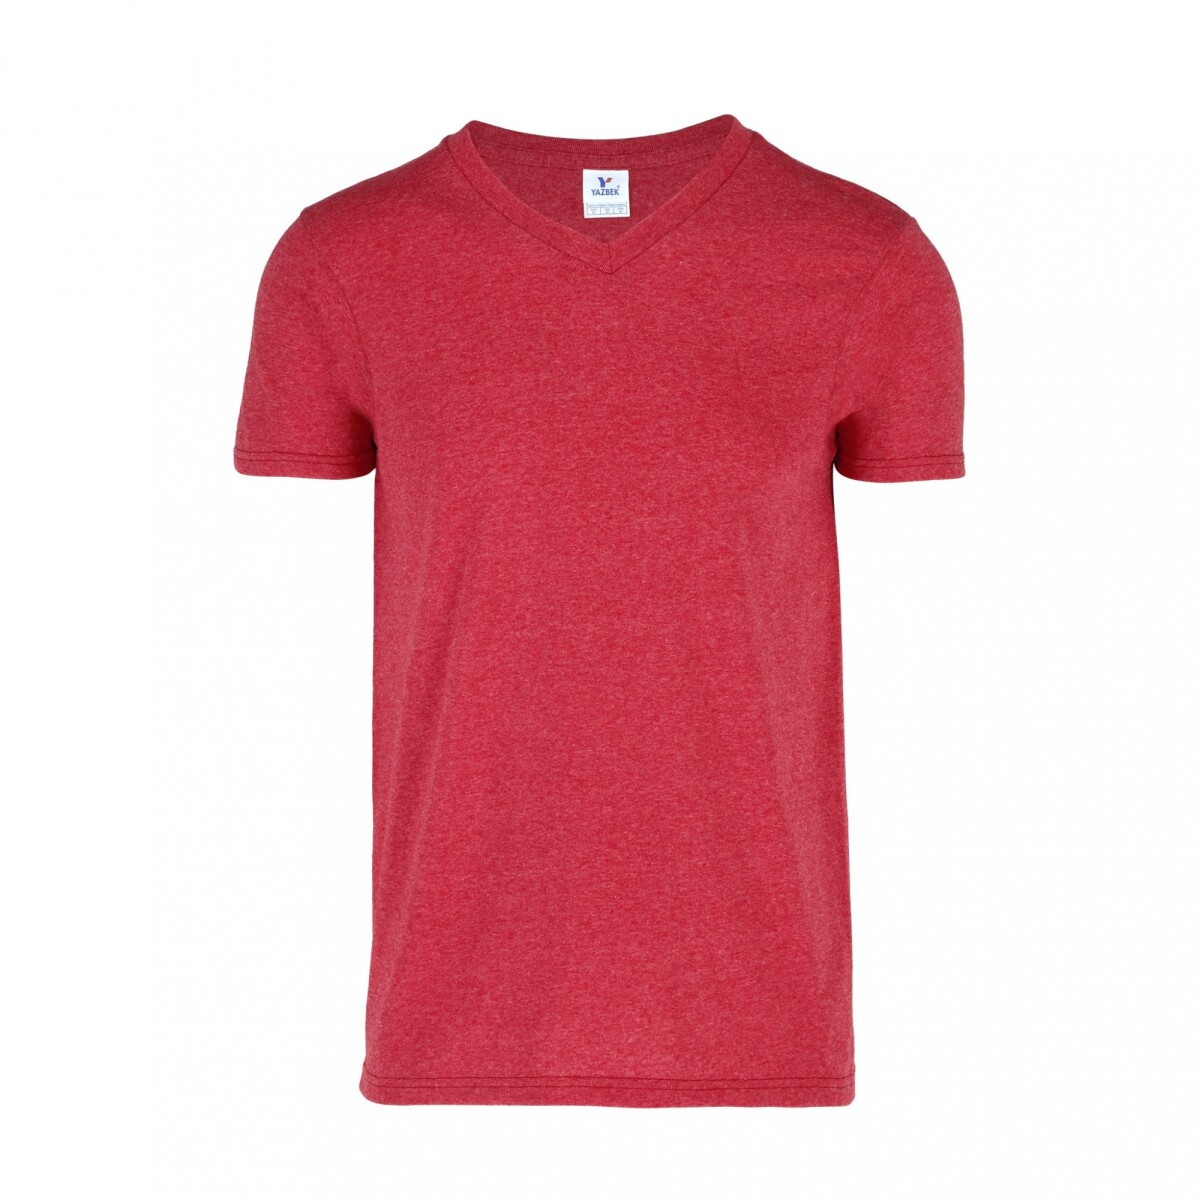 Camiseta jaspe escote en v - Rojo 